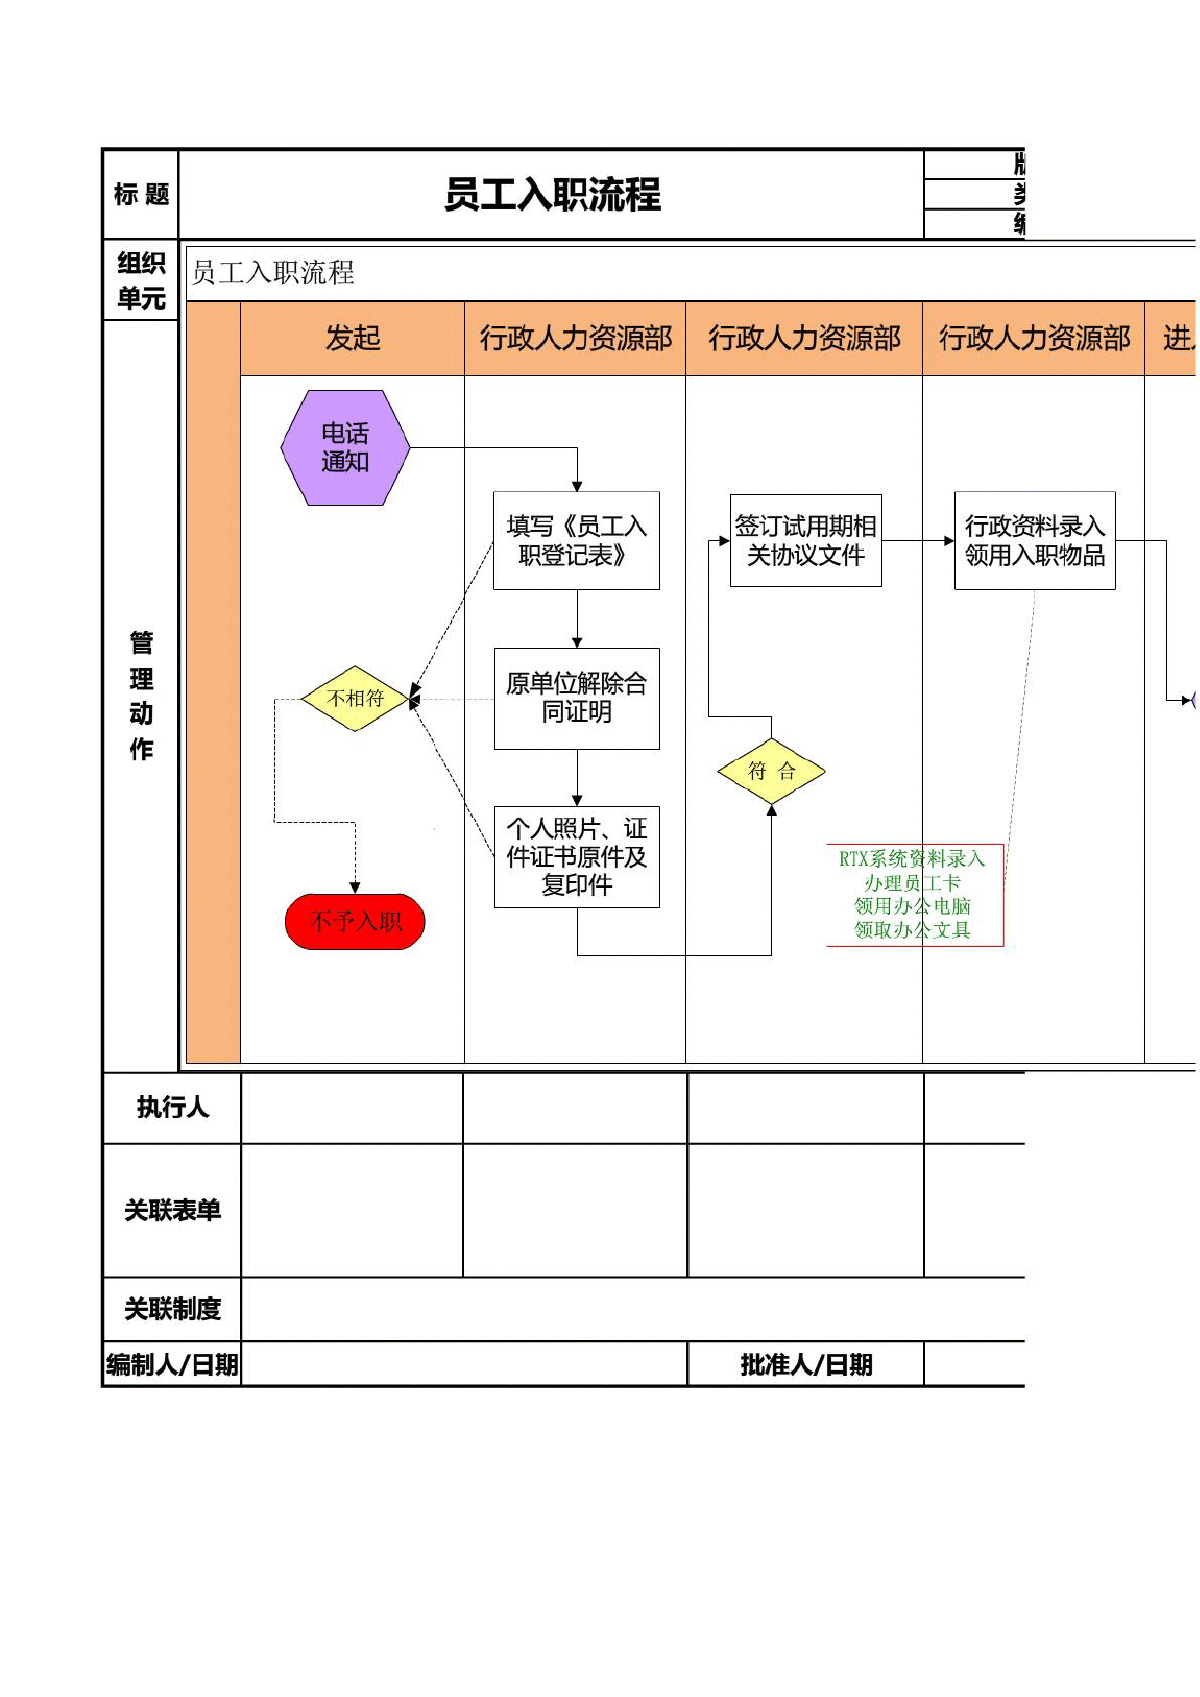 工作流程图模板(2010版)